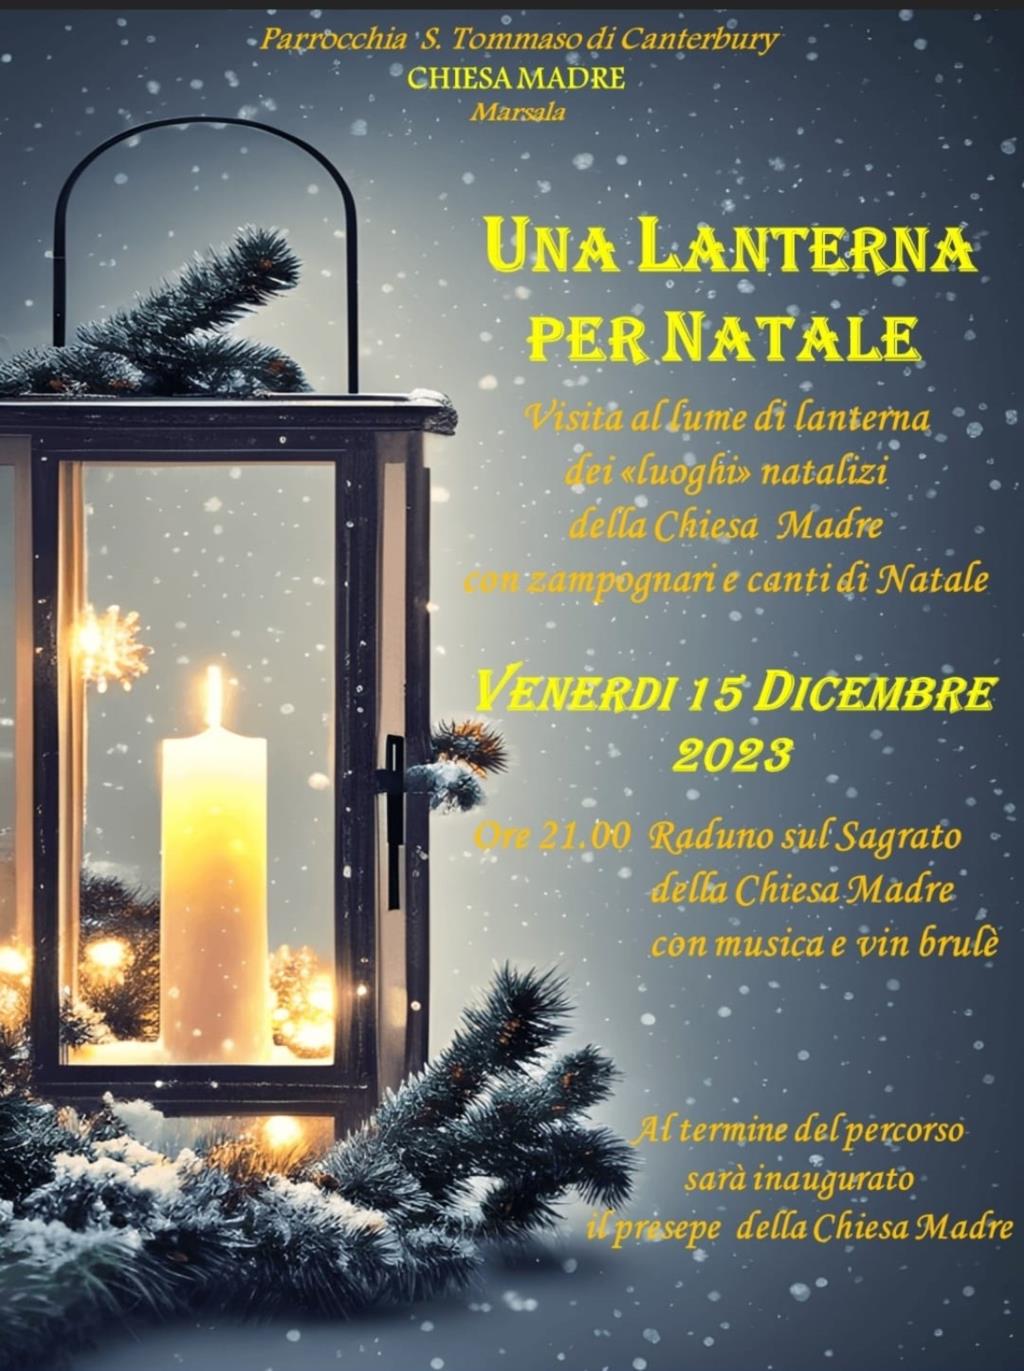 'Una lanterna per Natale' alla chiesa madre di Marsala